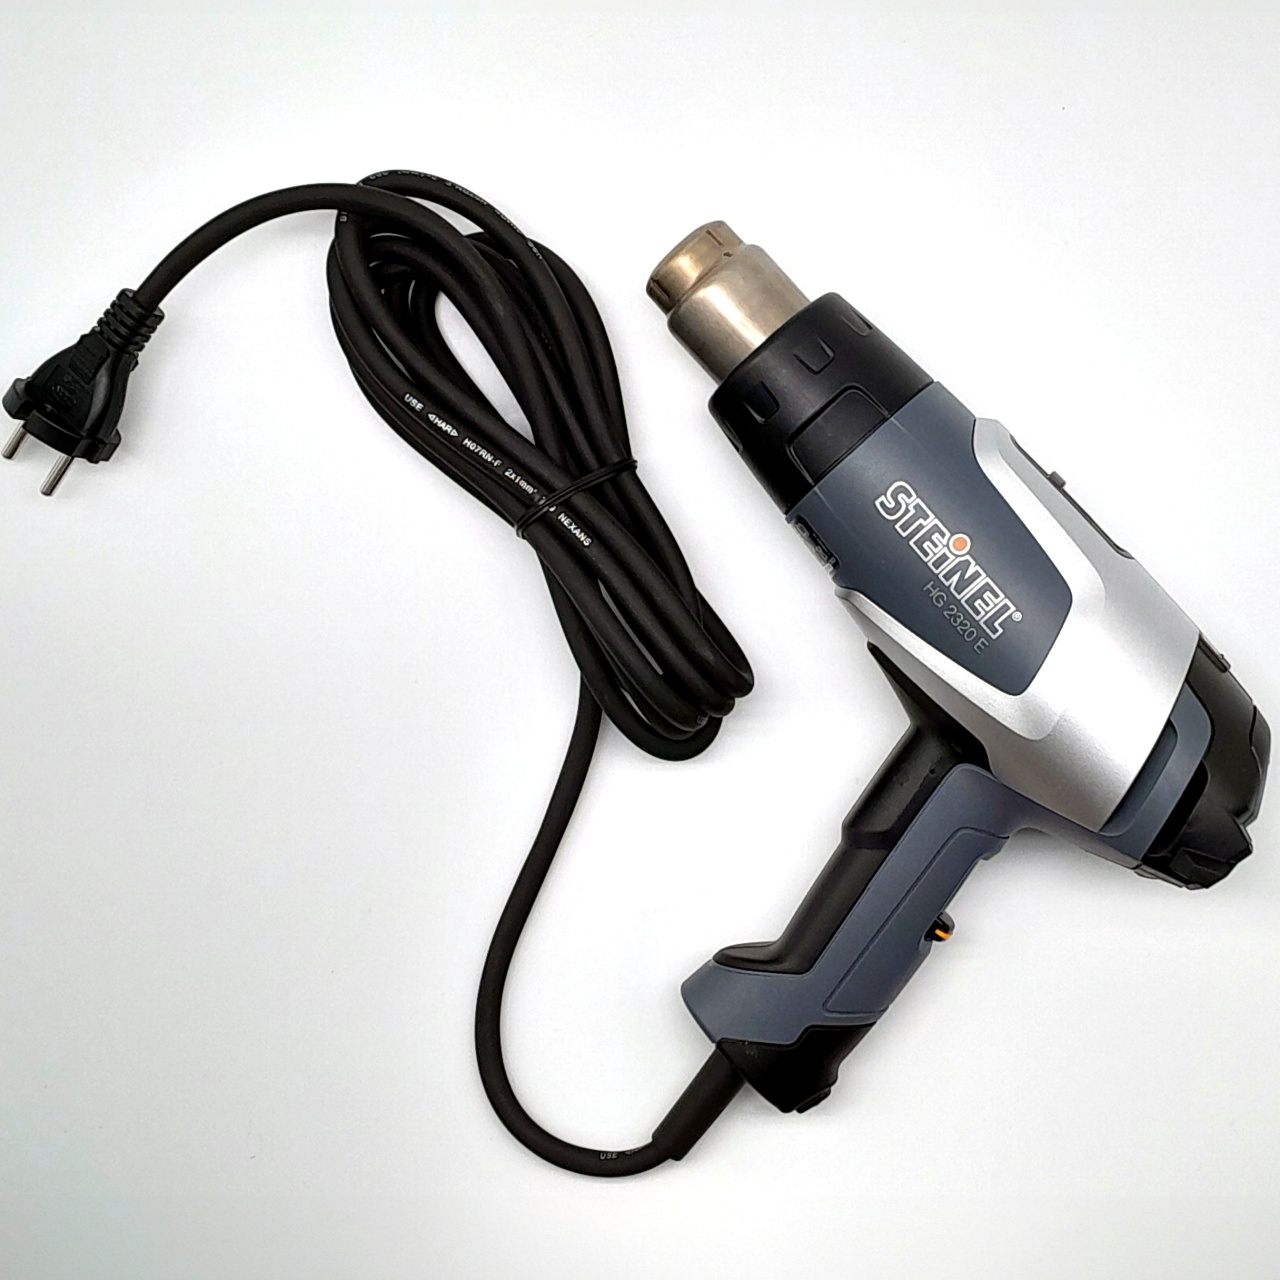 Heat Gun HG 2320 E